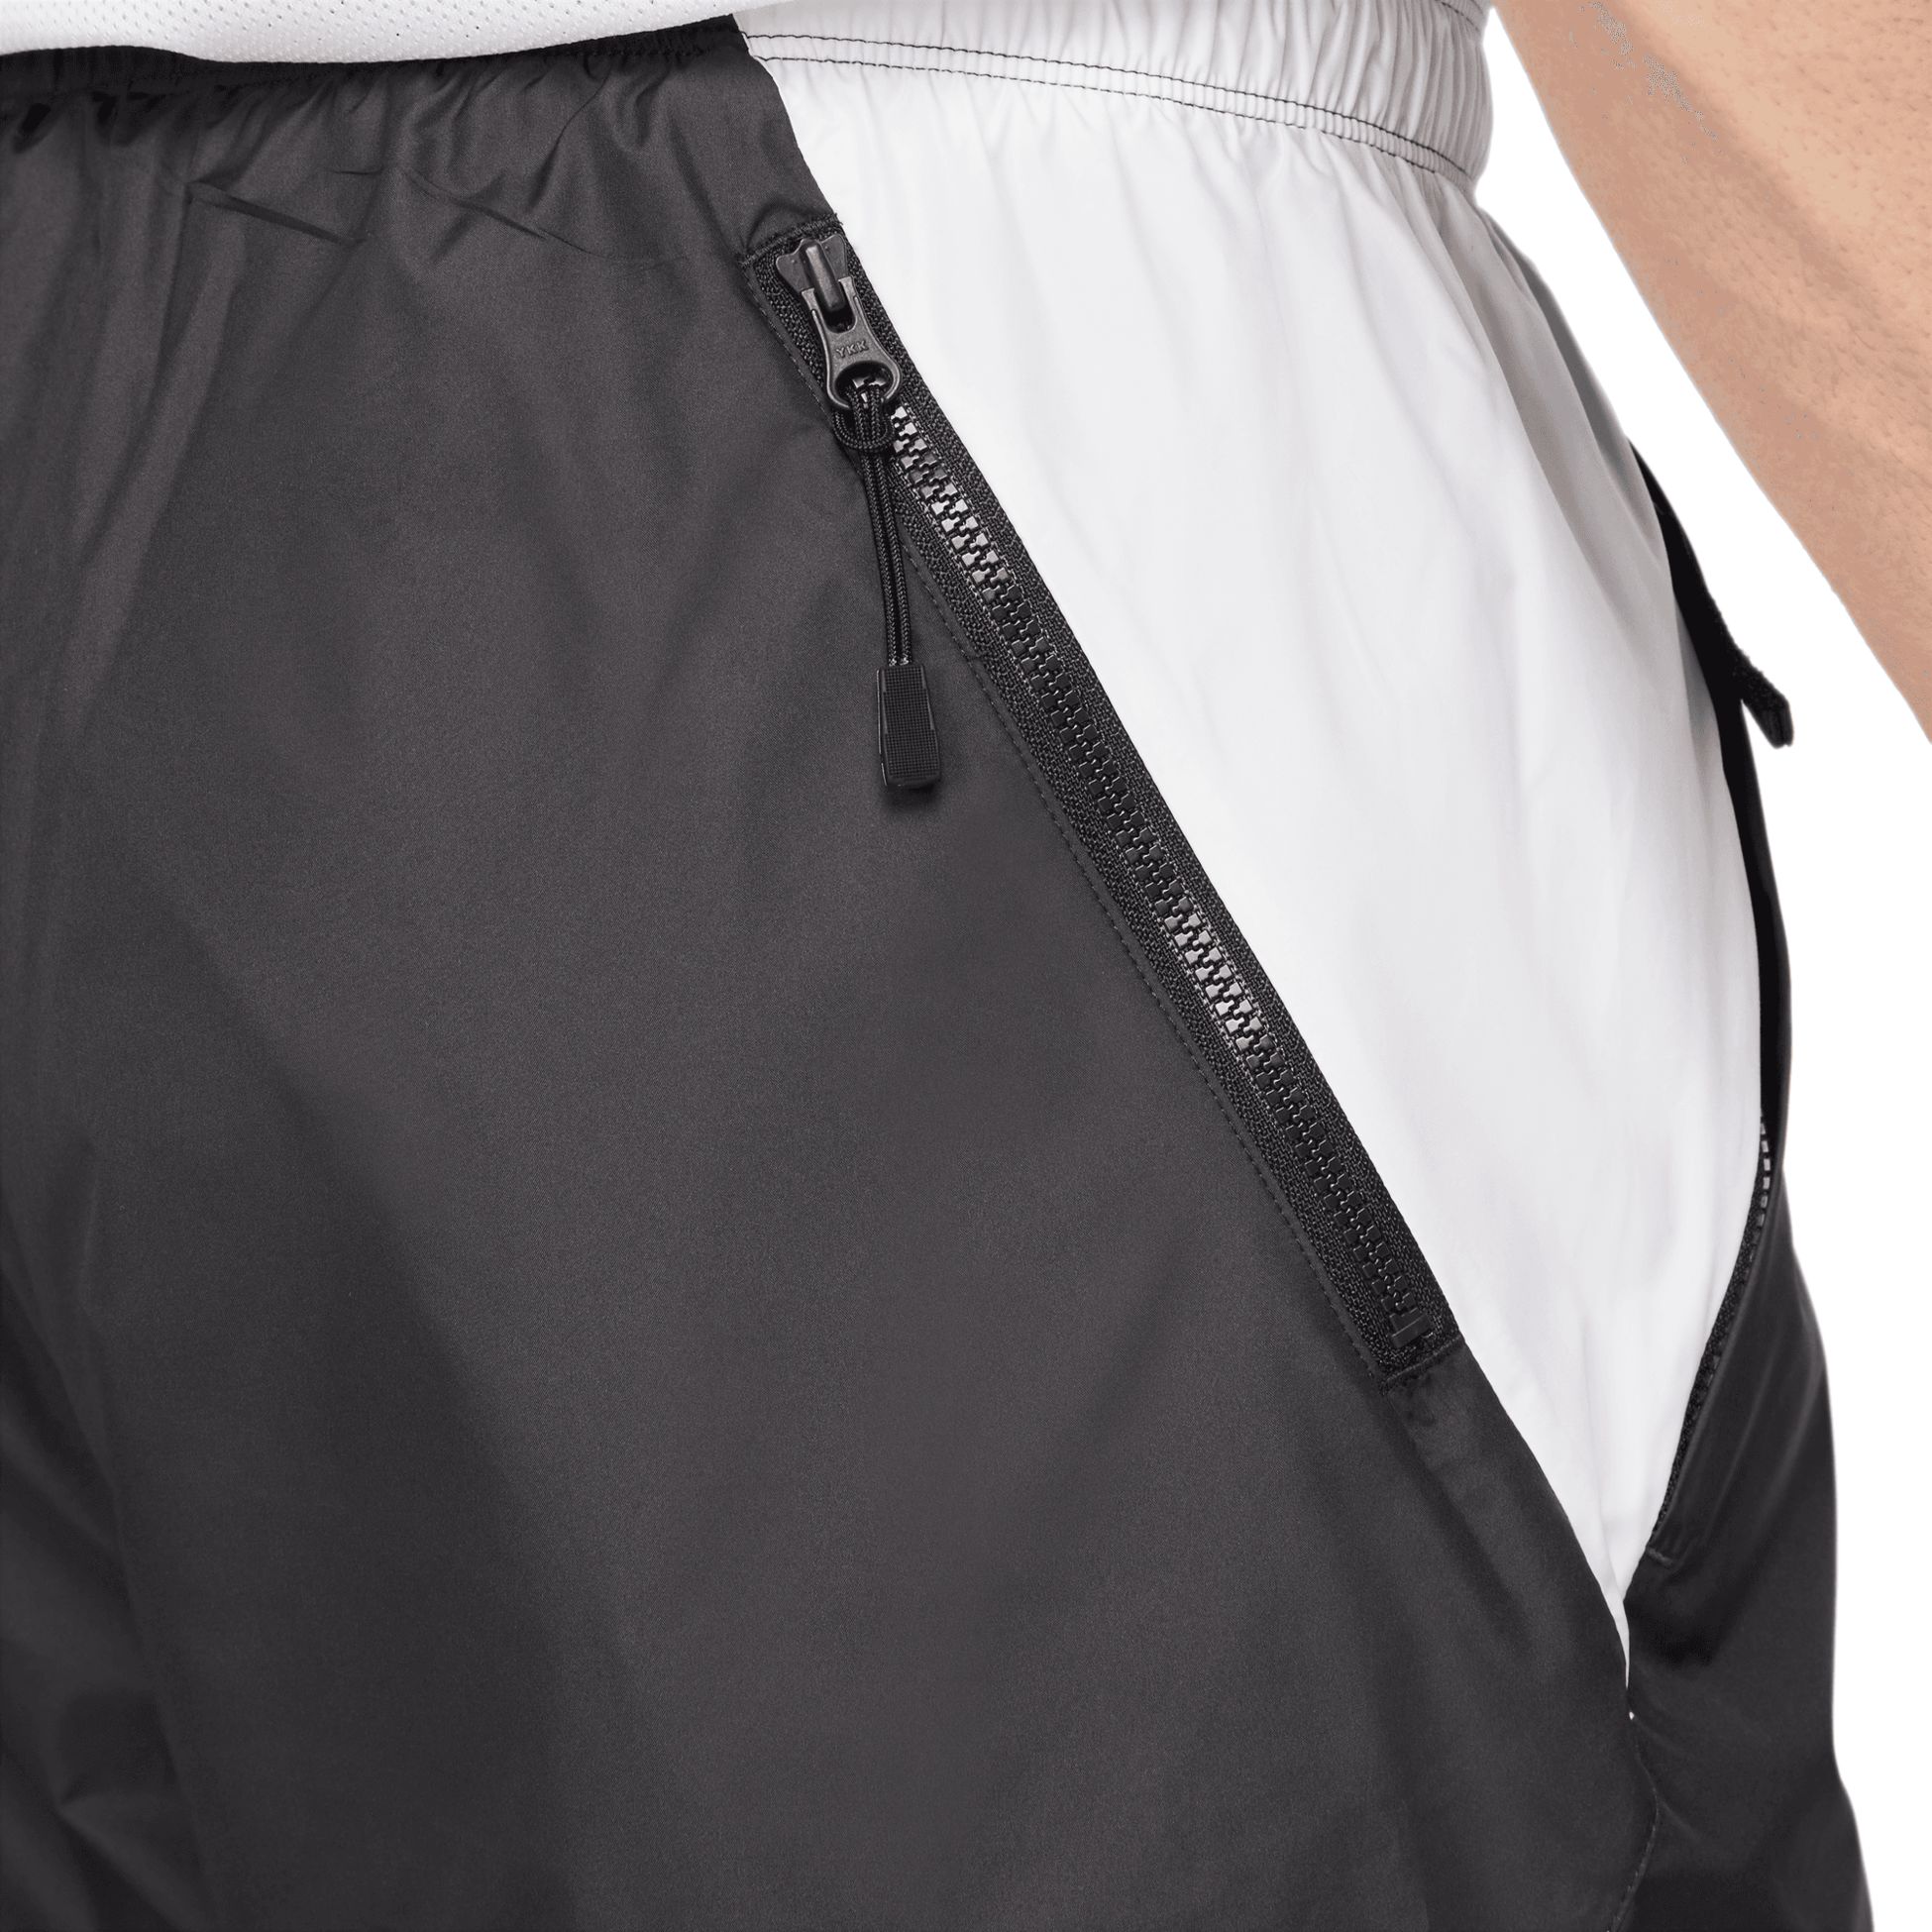 NIKE, Nike Repel Men's Soccer Pants